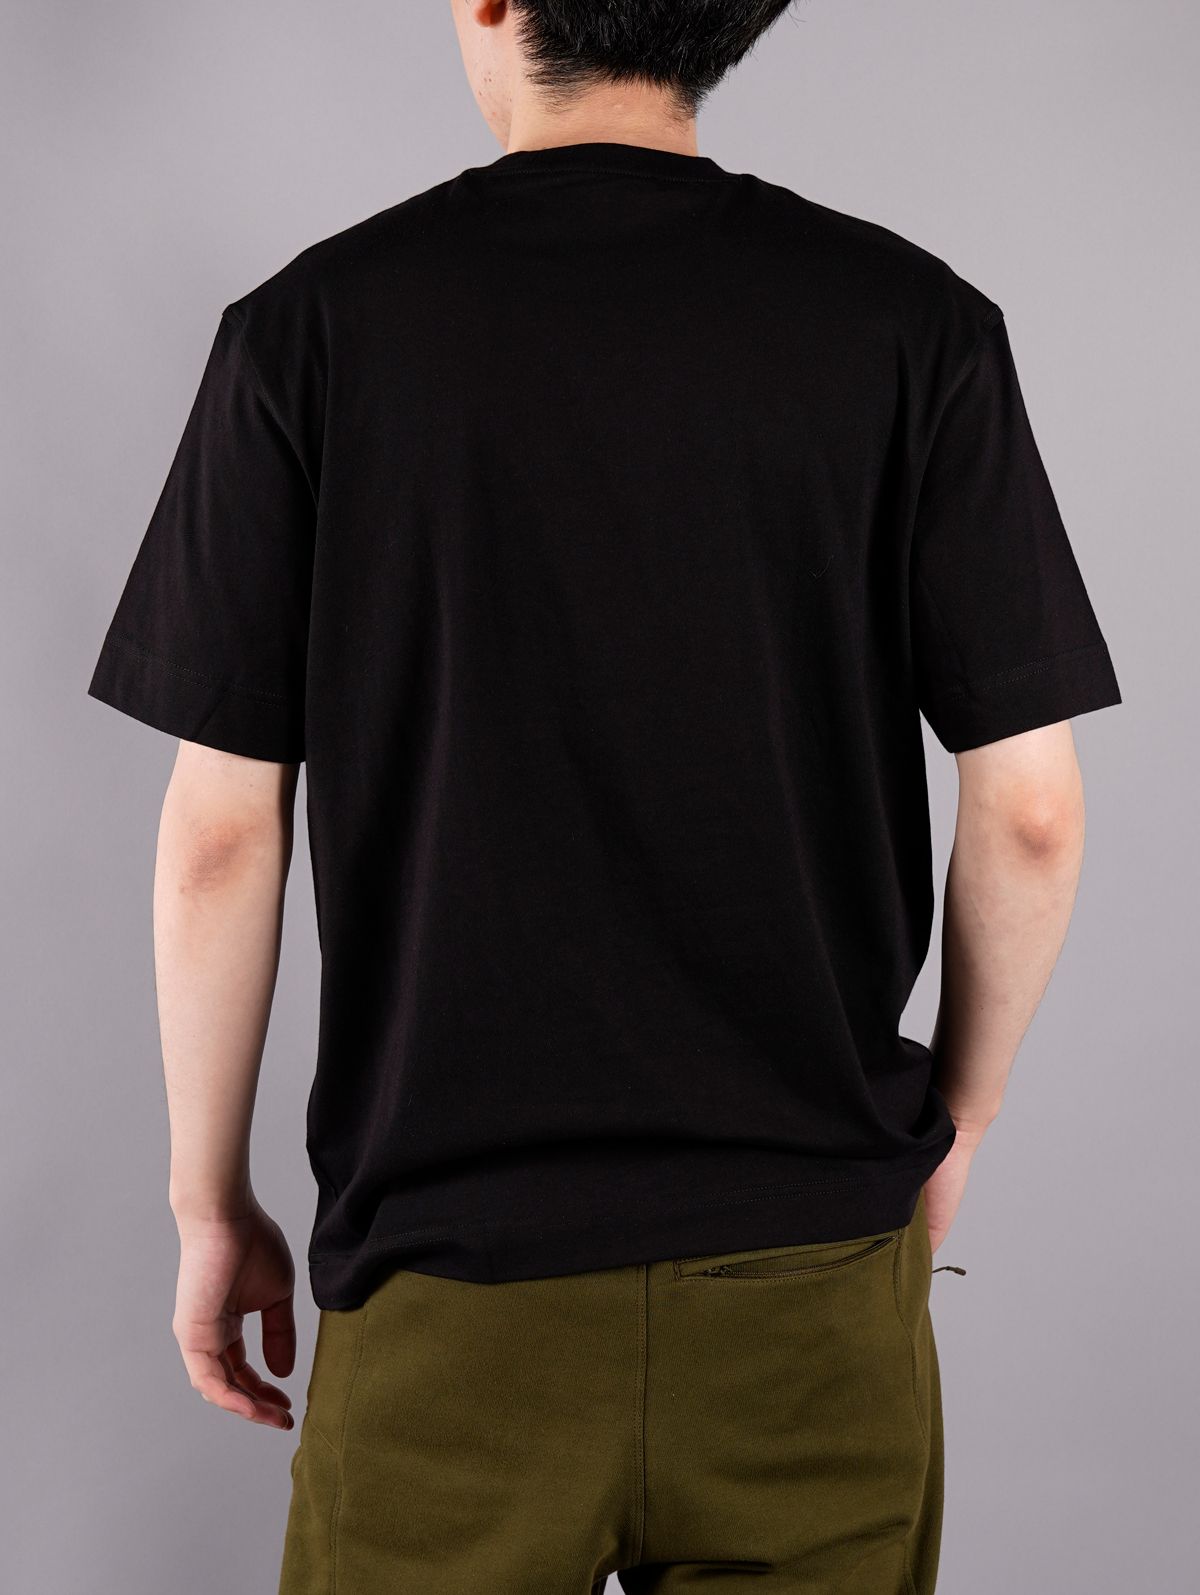 U SQUARE LABEL GRAPHIC SS T / ユニセックス スクエア ラベル グラフィック Tシャツ (ブラック) - M